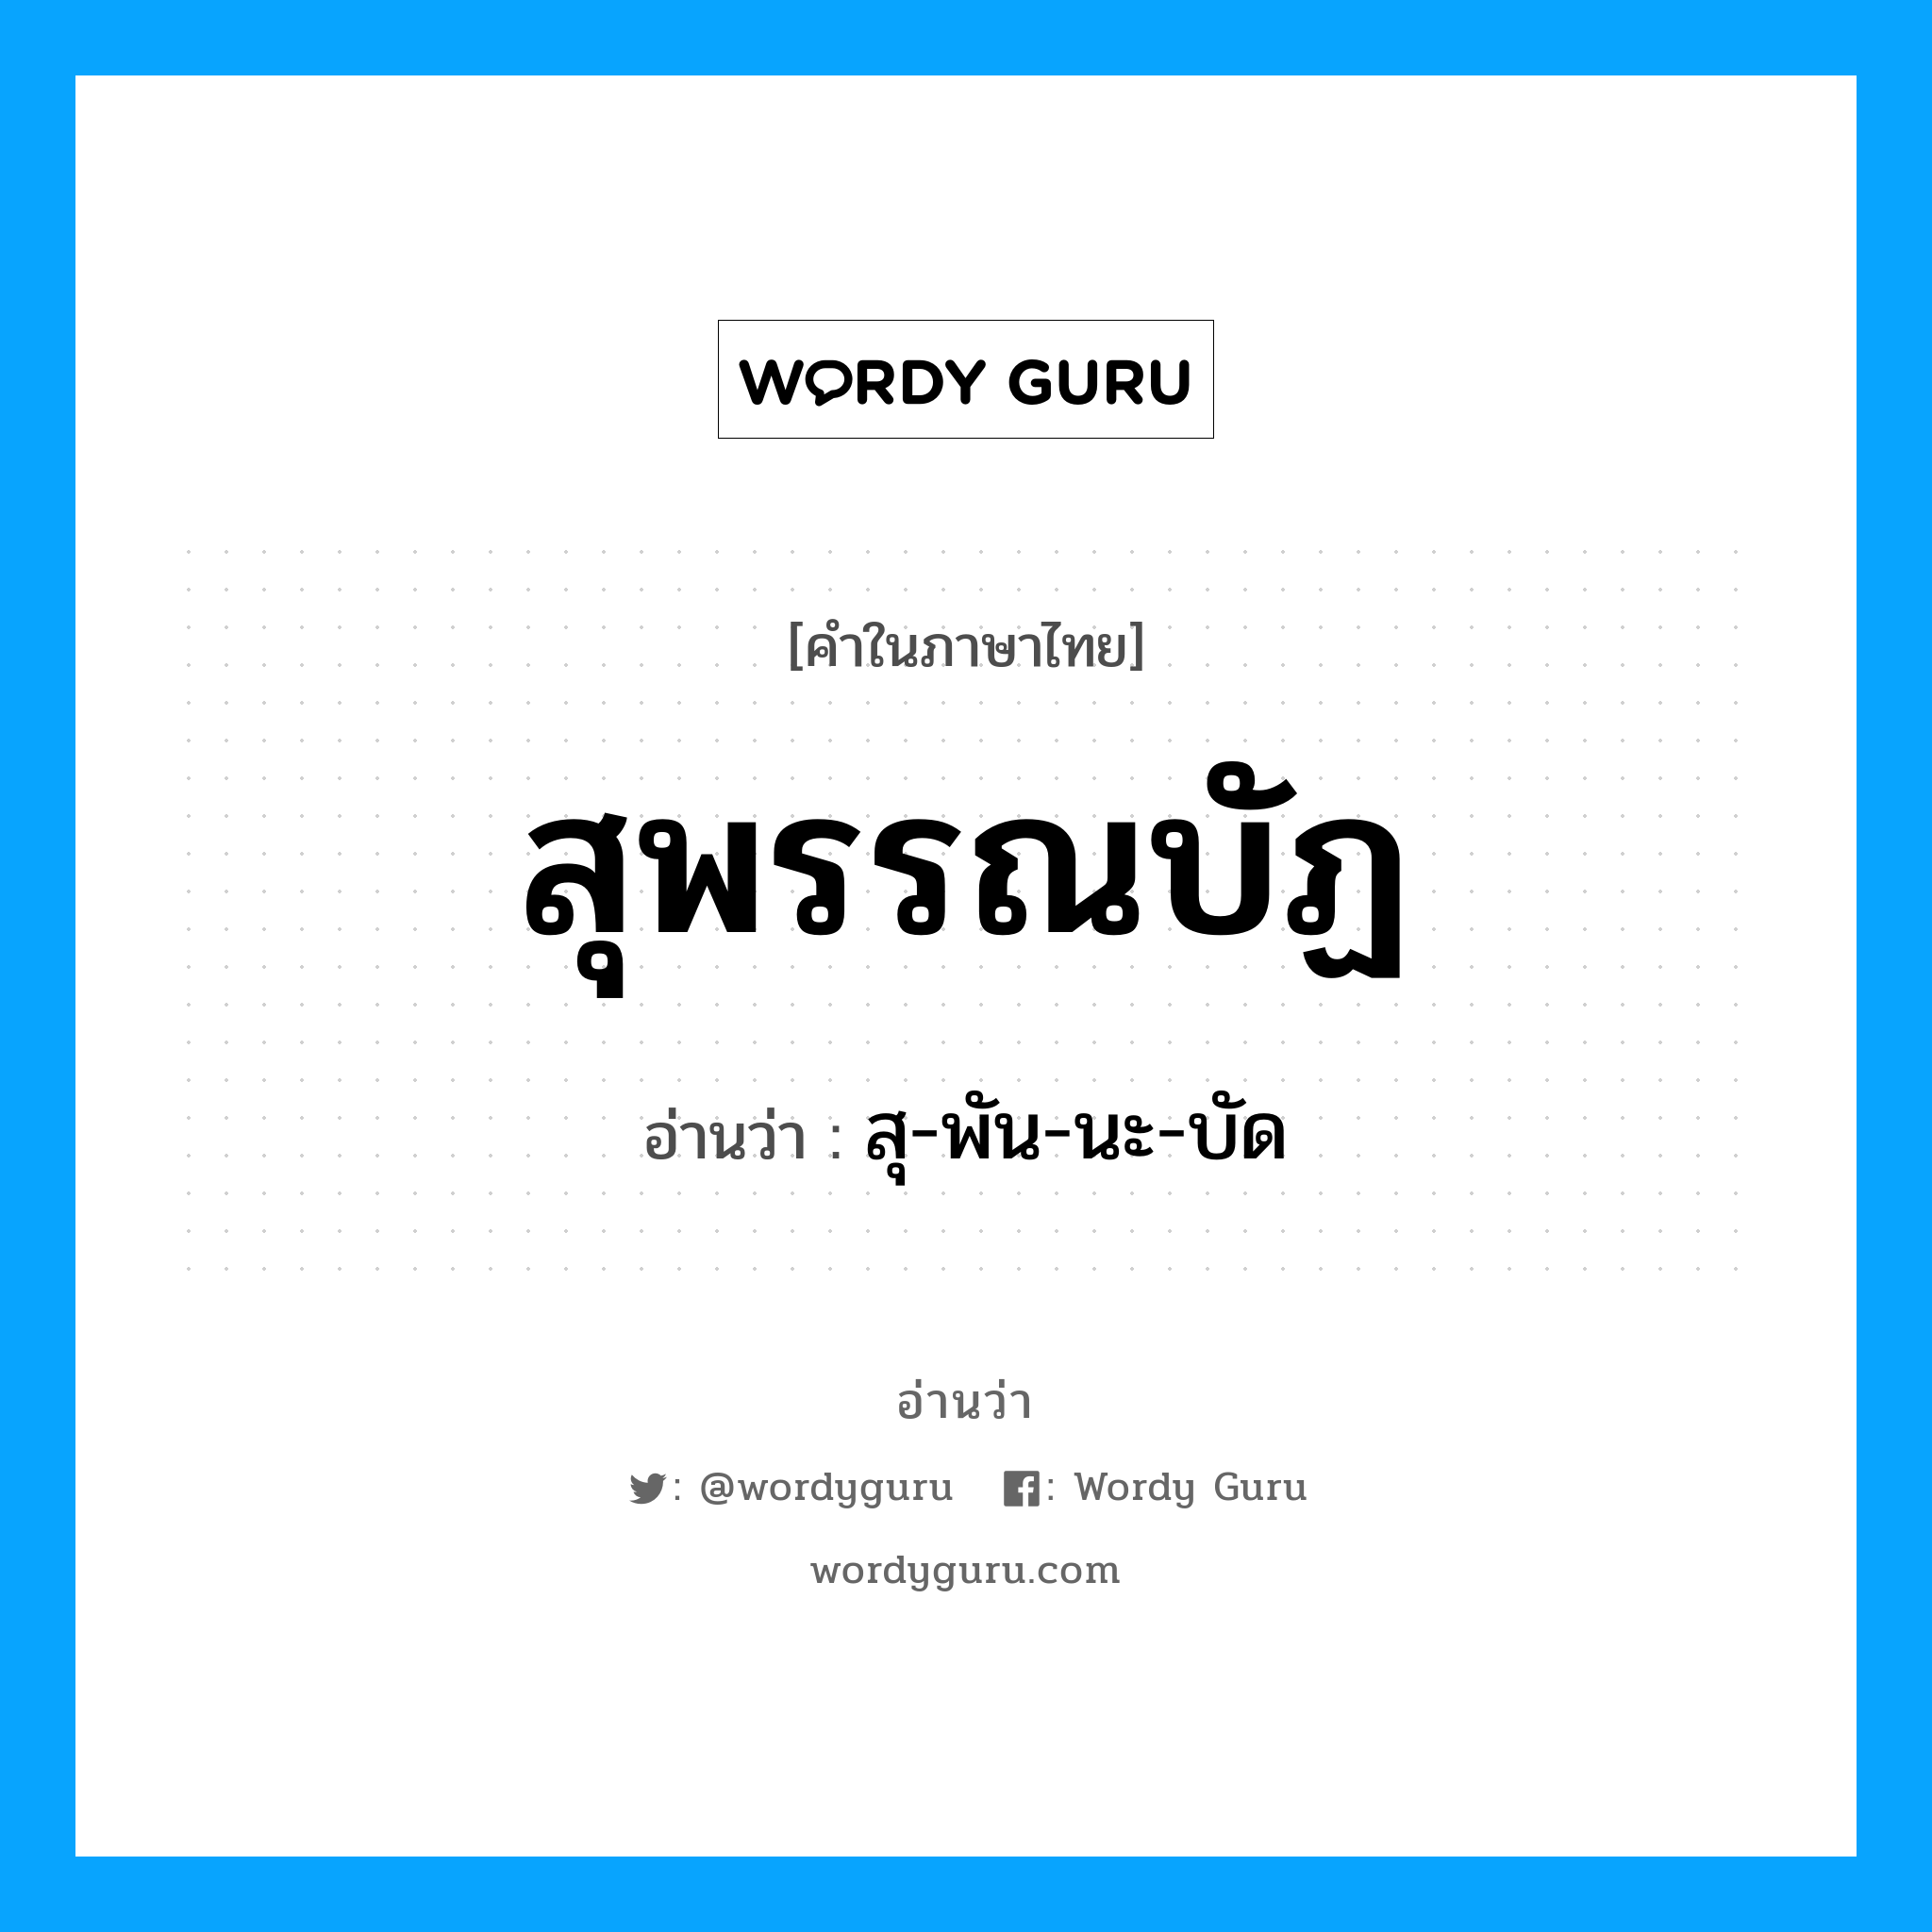 สุ-พัน-นะ-บัด เป็นคำอ่านของคำไหน?, คำในภาษาไทย สุ-พัน-นะ-บัด อ่านว่า สุพรรณบัฏ